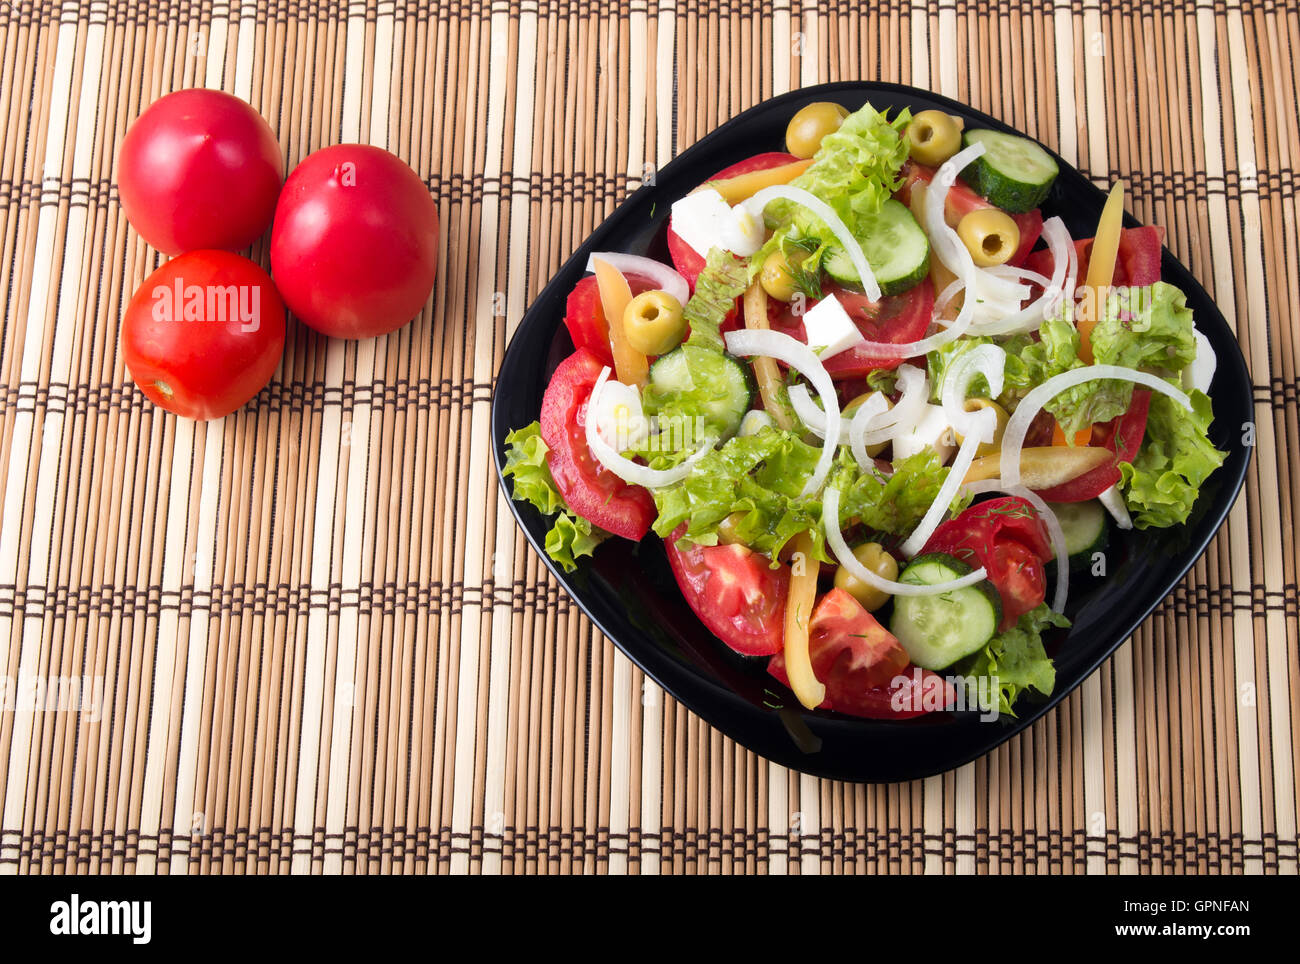 Vue de dessus sur une salade de légumes sains et naturels avec tomates, concombres, olives, oignon, laitue, poivre et huile d'olive sur un fond noir Banque D'Images